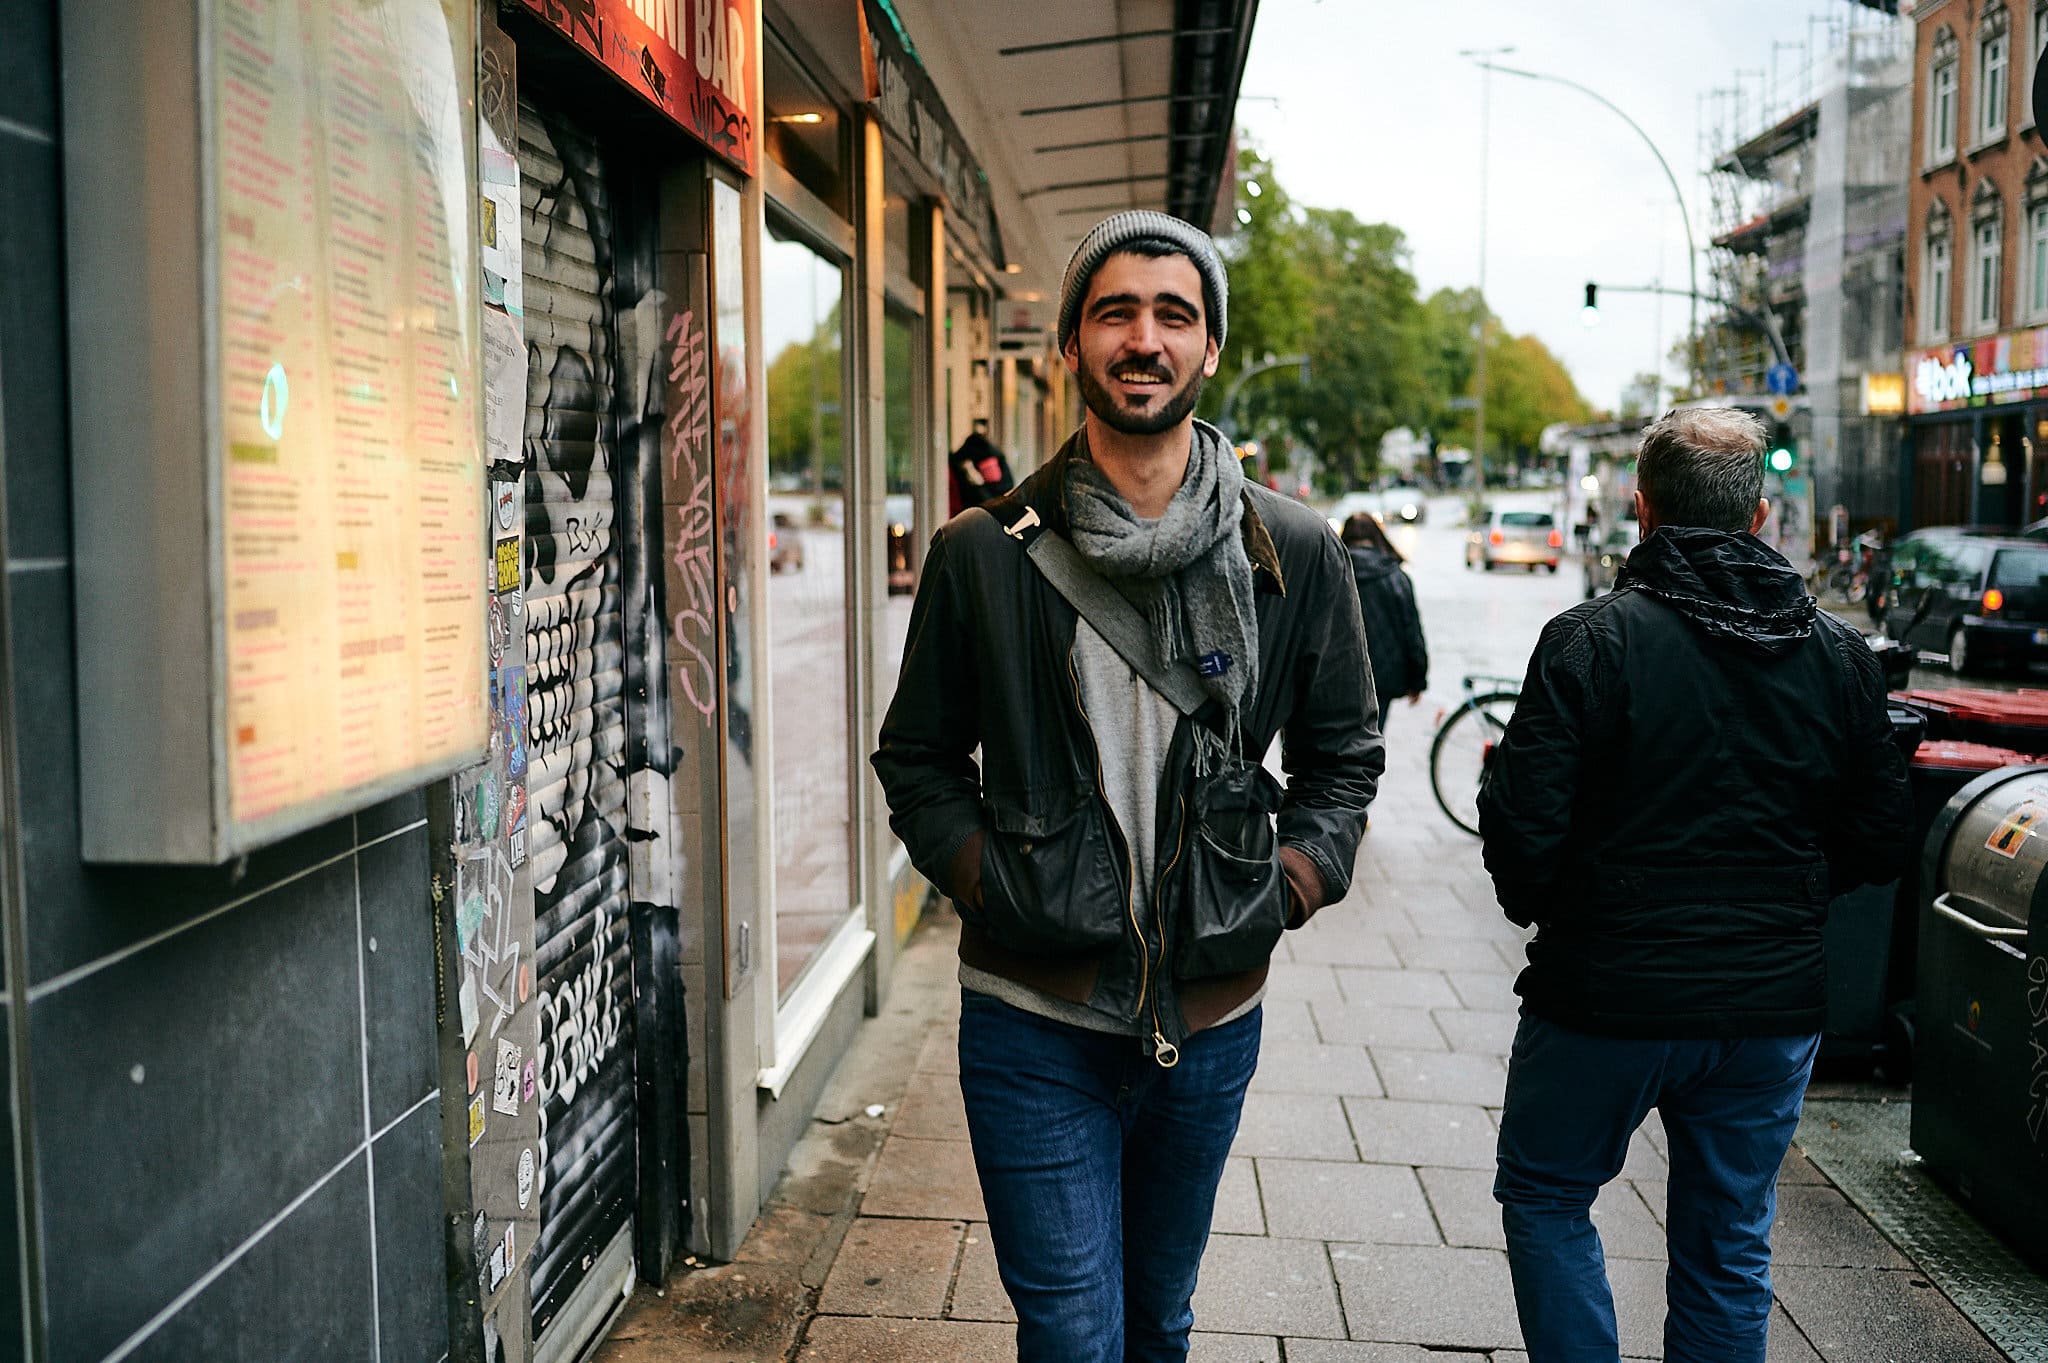 Mann lächelt, während er auf einem belebten Bürgersteig in der Stadt in der Nähe eines einladenden Ladens steht.